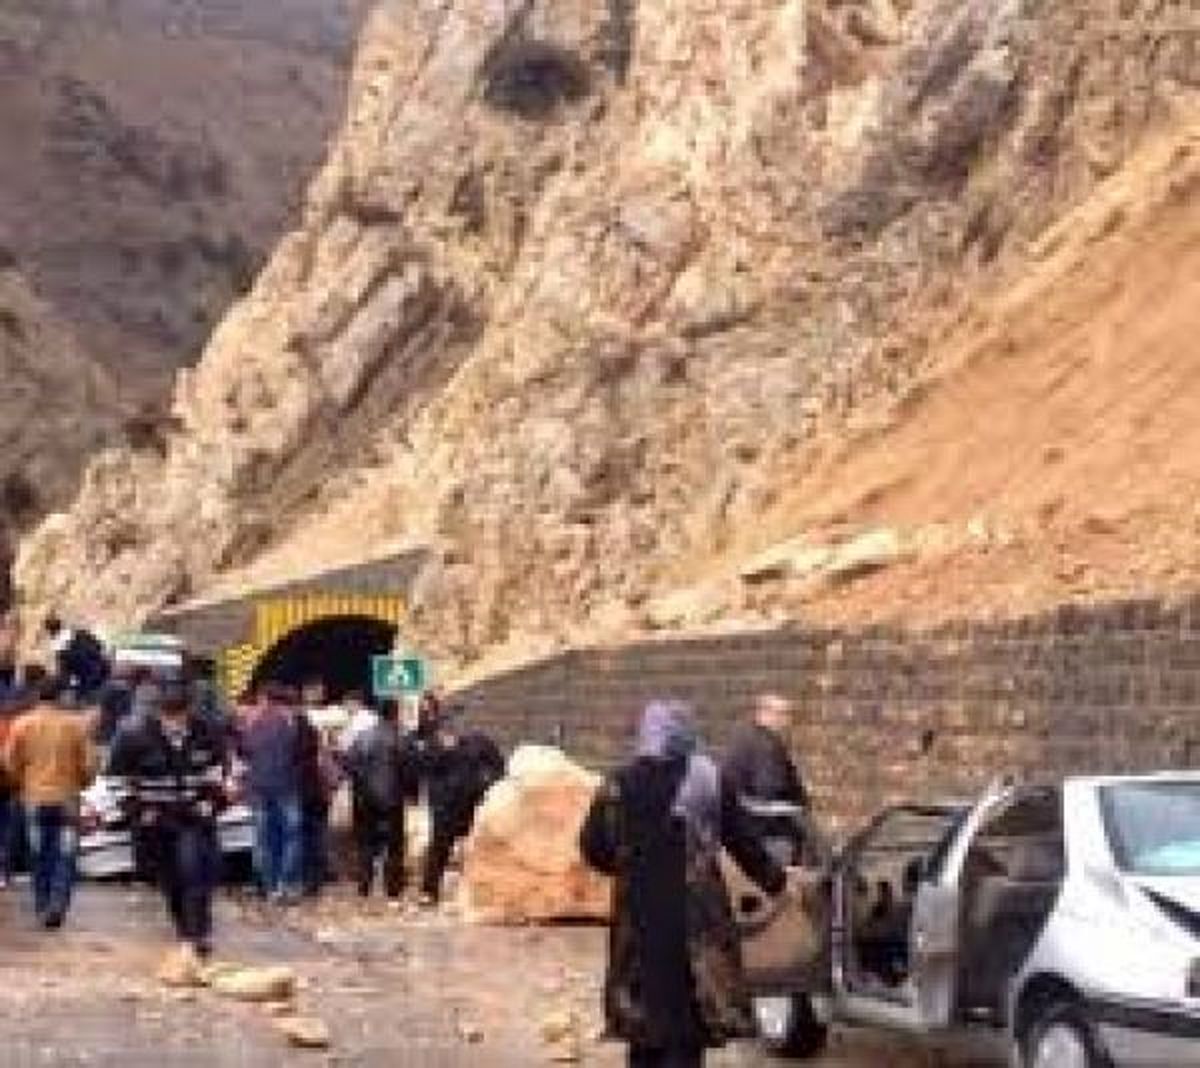 ۲ کشته در ریزش تونل گردنه چری در شهرستان کوهرنگ